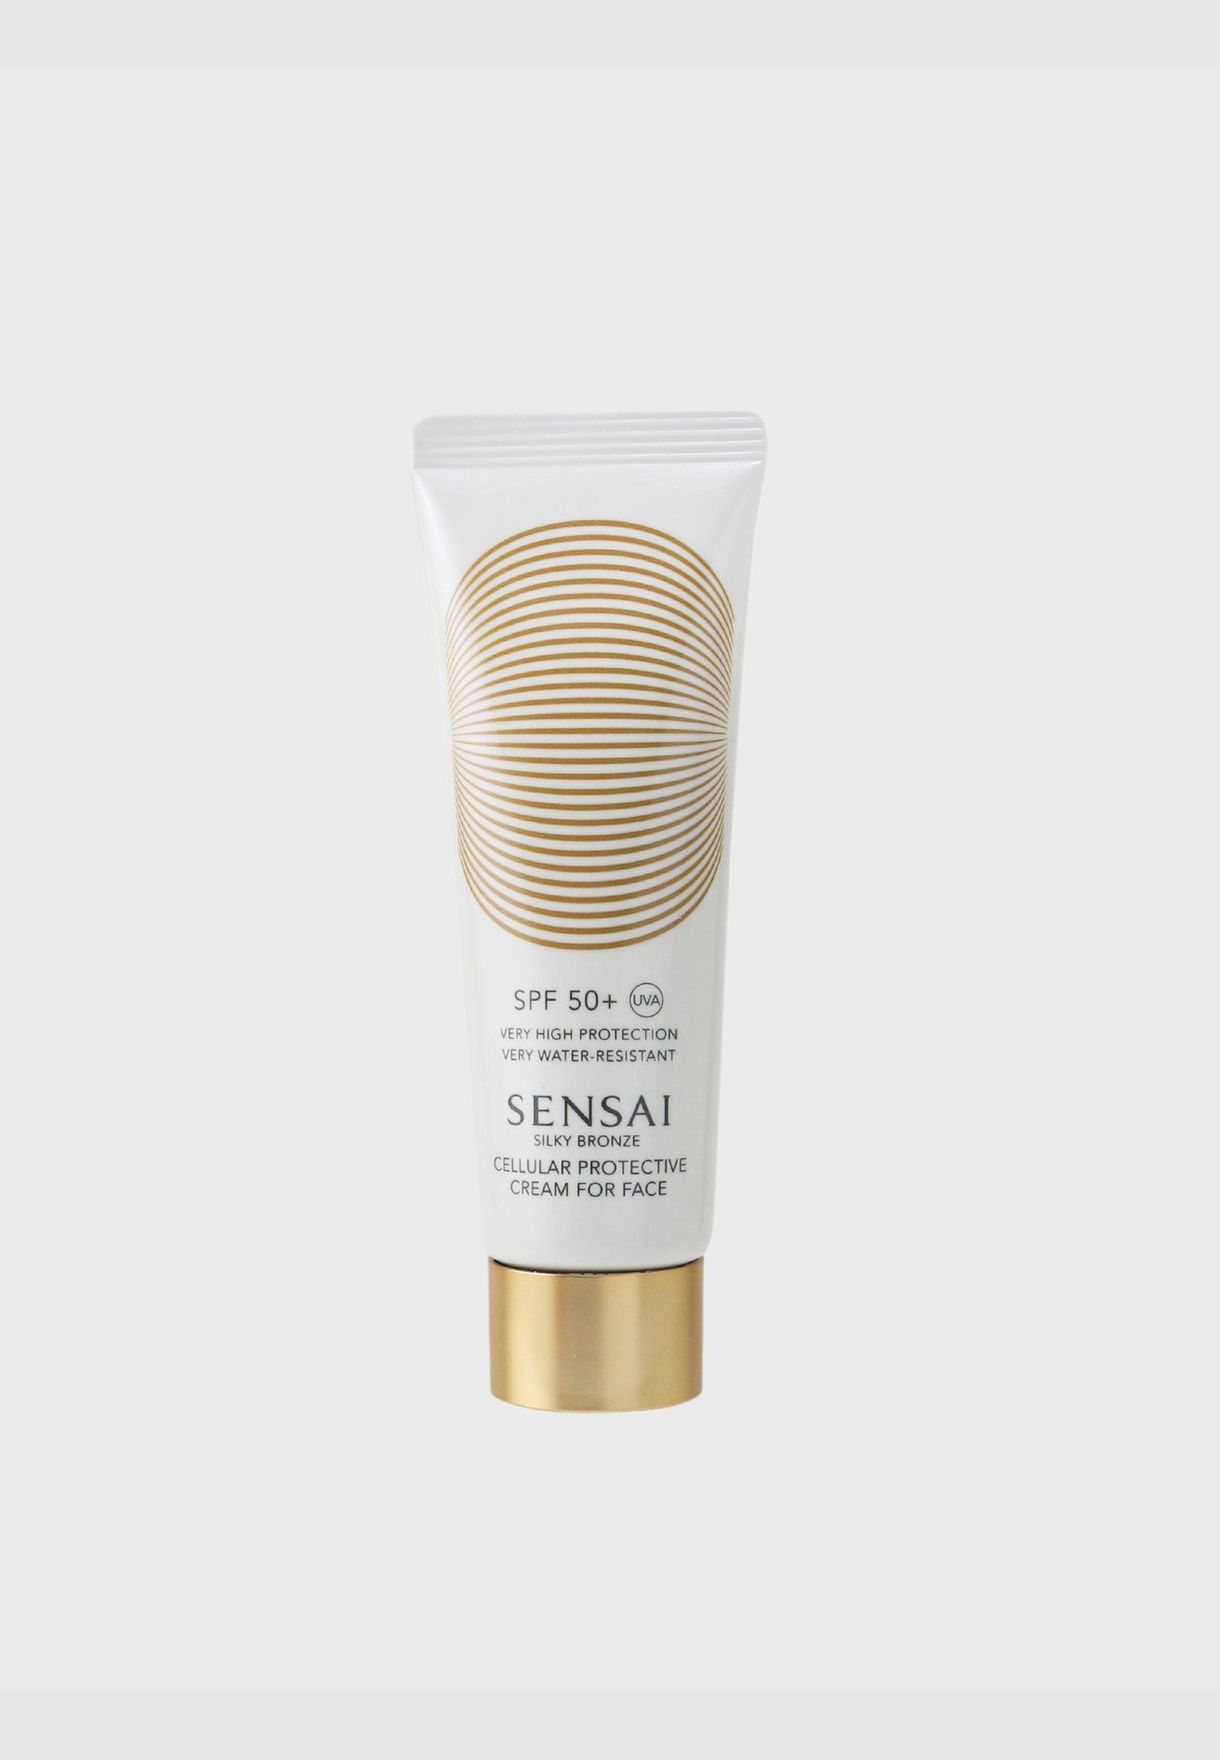 Sensai Silky Bronze Anti-Ageing Sun Care - Cellular Protective Cream For Face SPF50